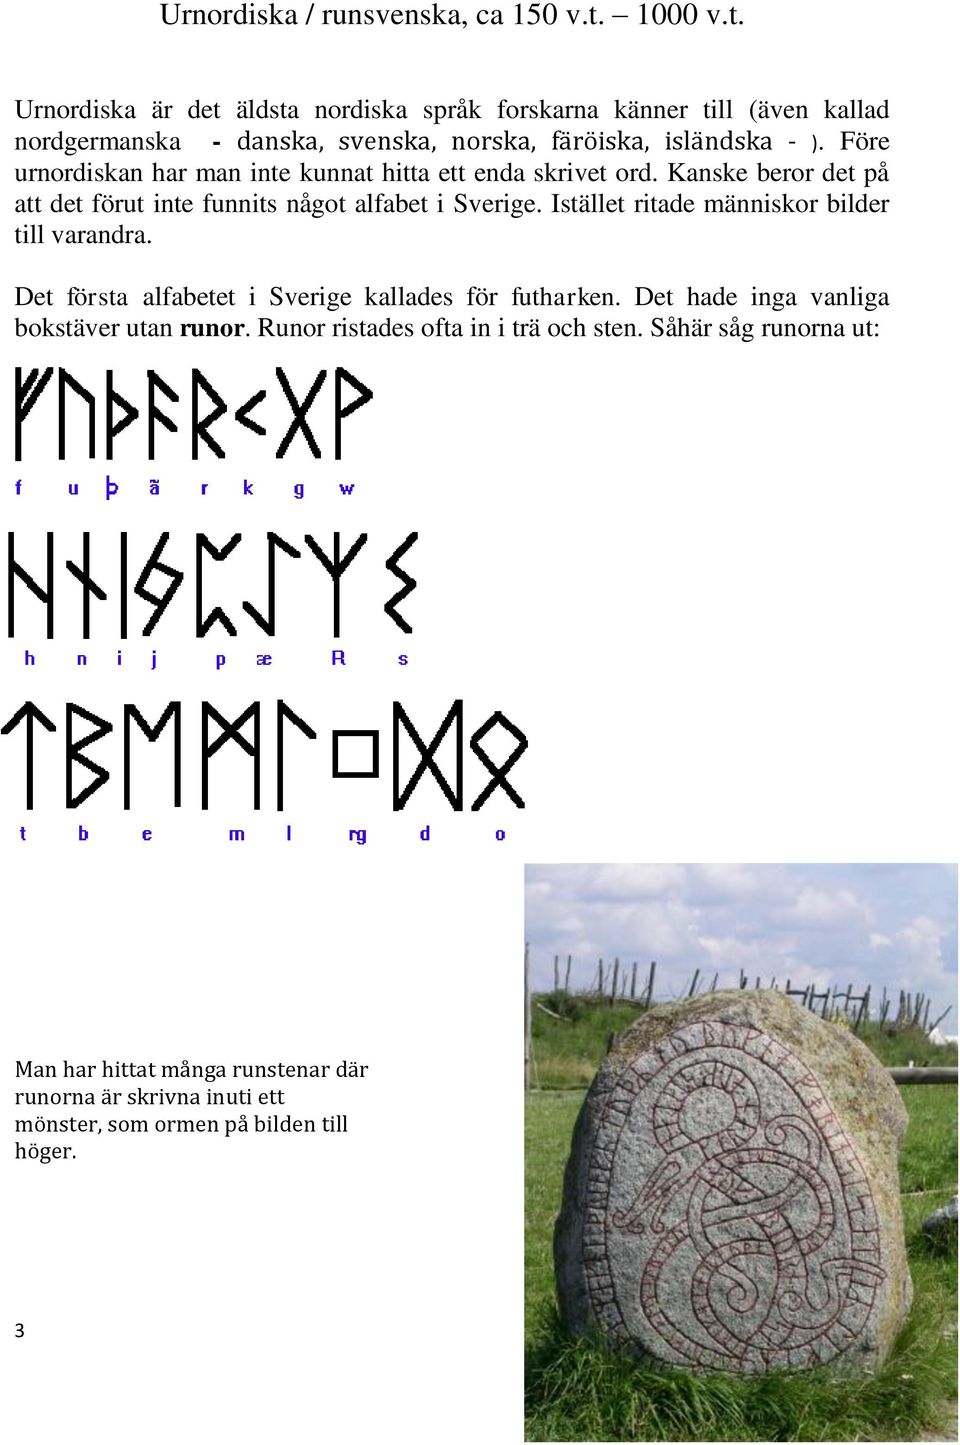 Före urnordiskan har man inte kunnat hitta ett enda skrivet ord. Kanske beror det på att det förut inte funnits något alfabet i Sverige.